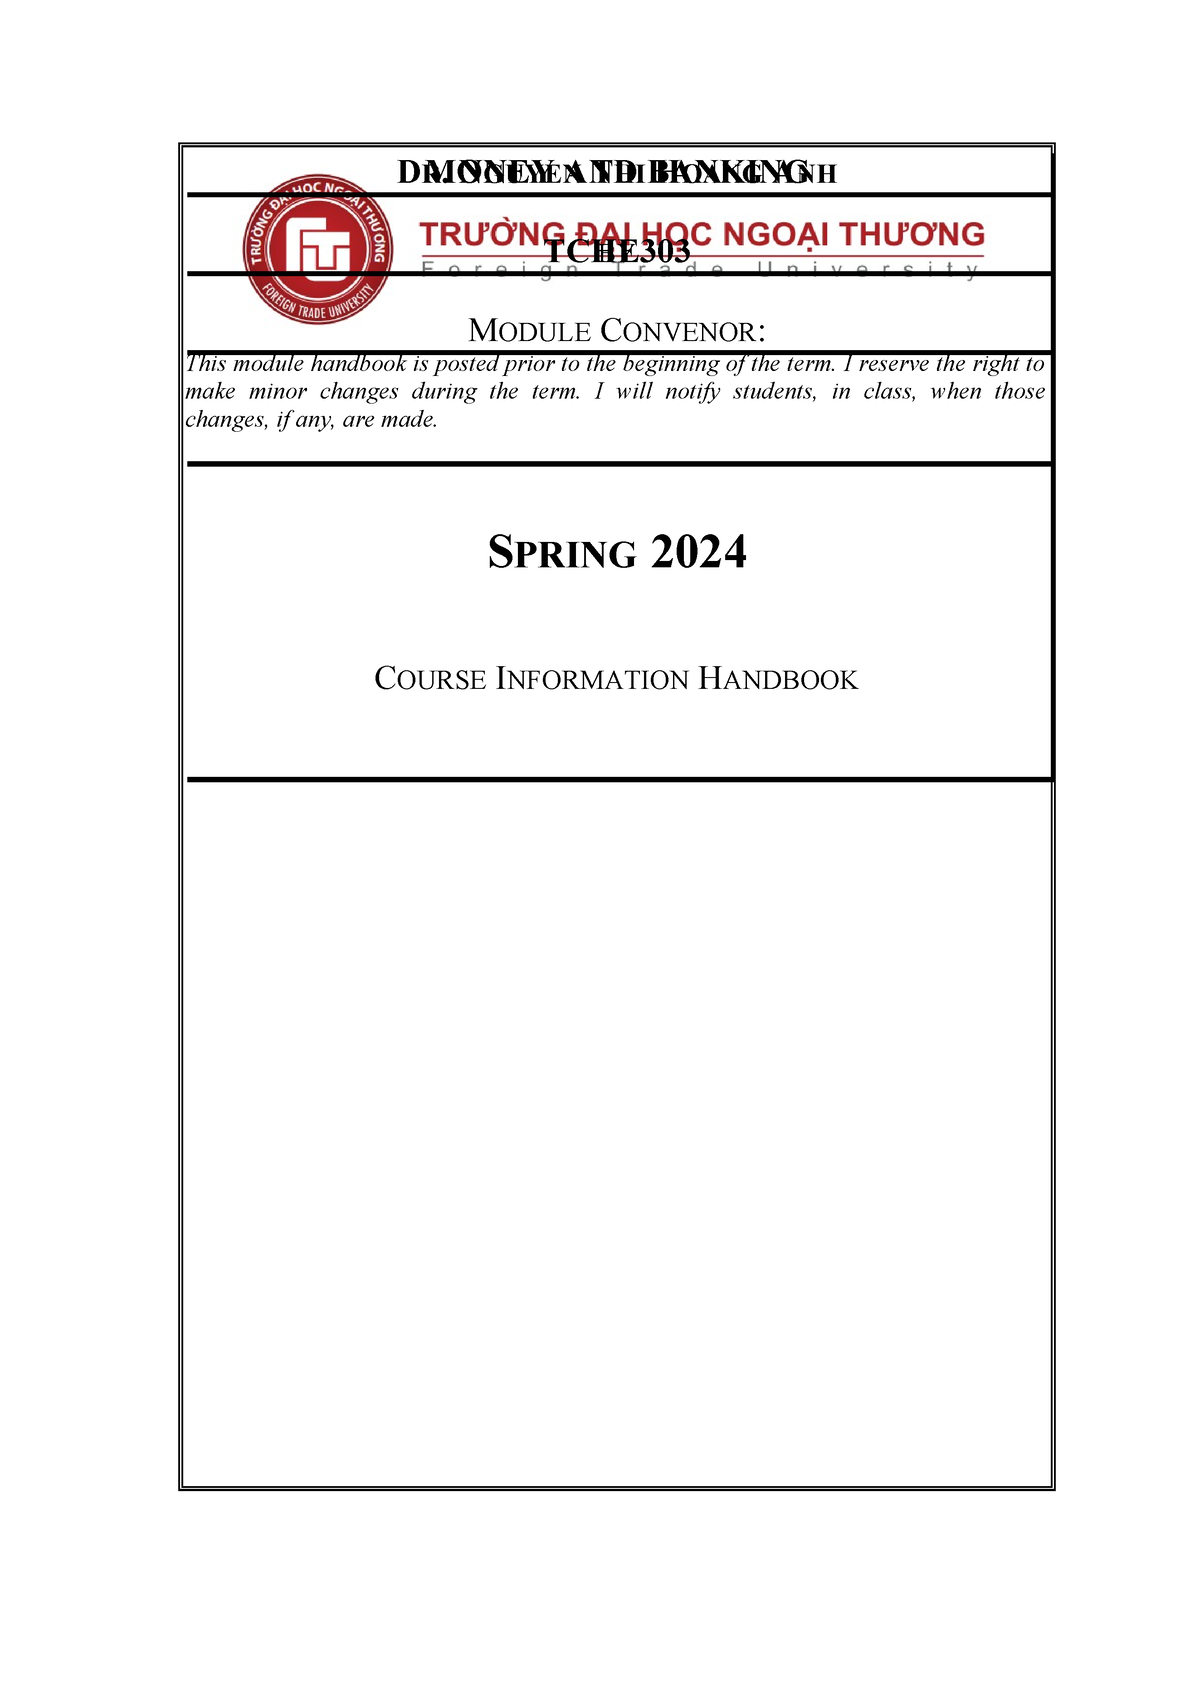 TCHE303 Module handbook Spring 2024 CLC SPRING 2024 COURSE